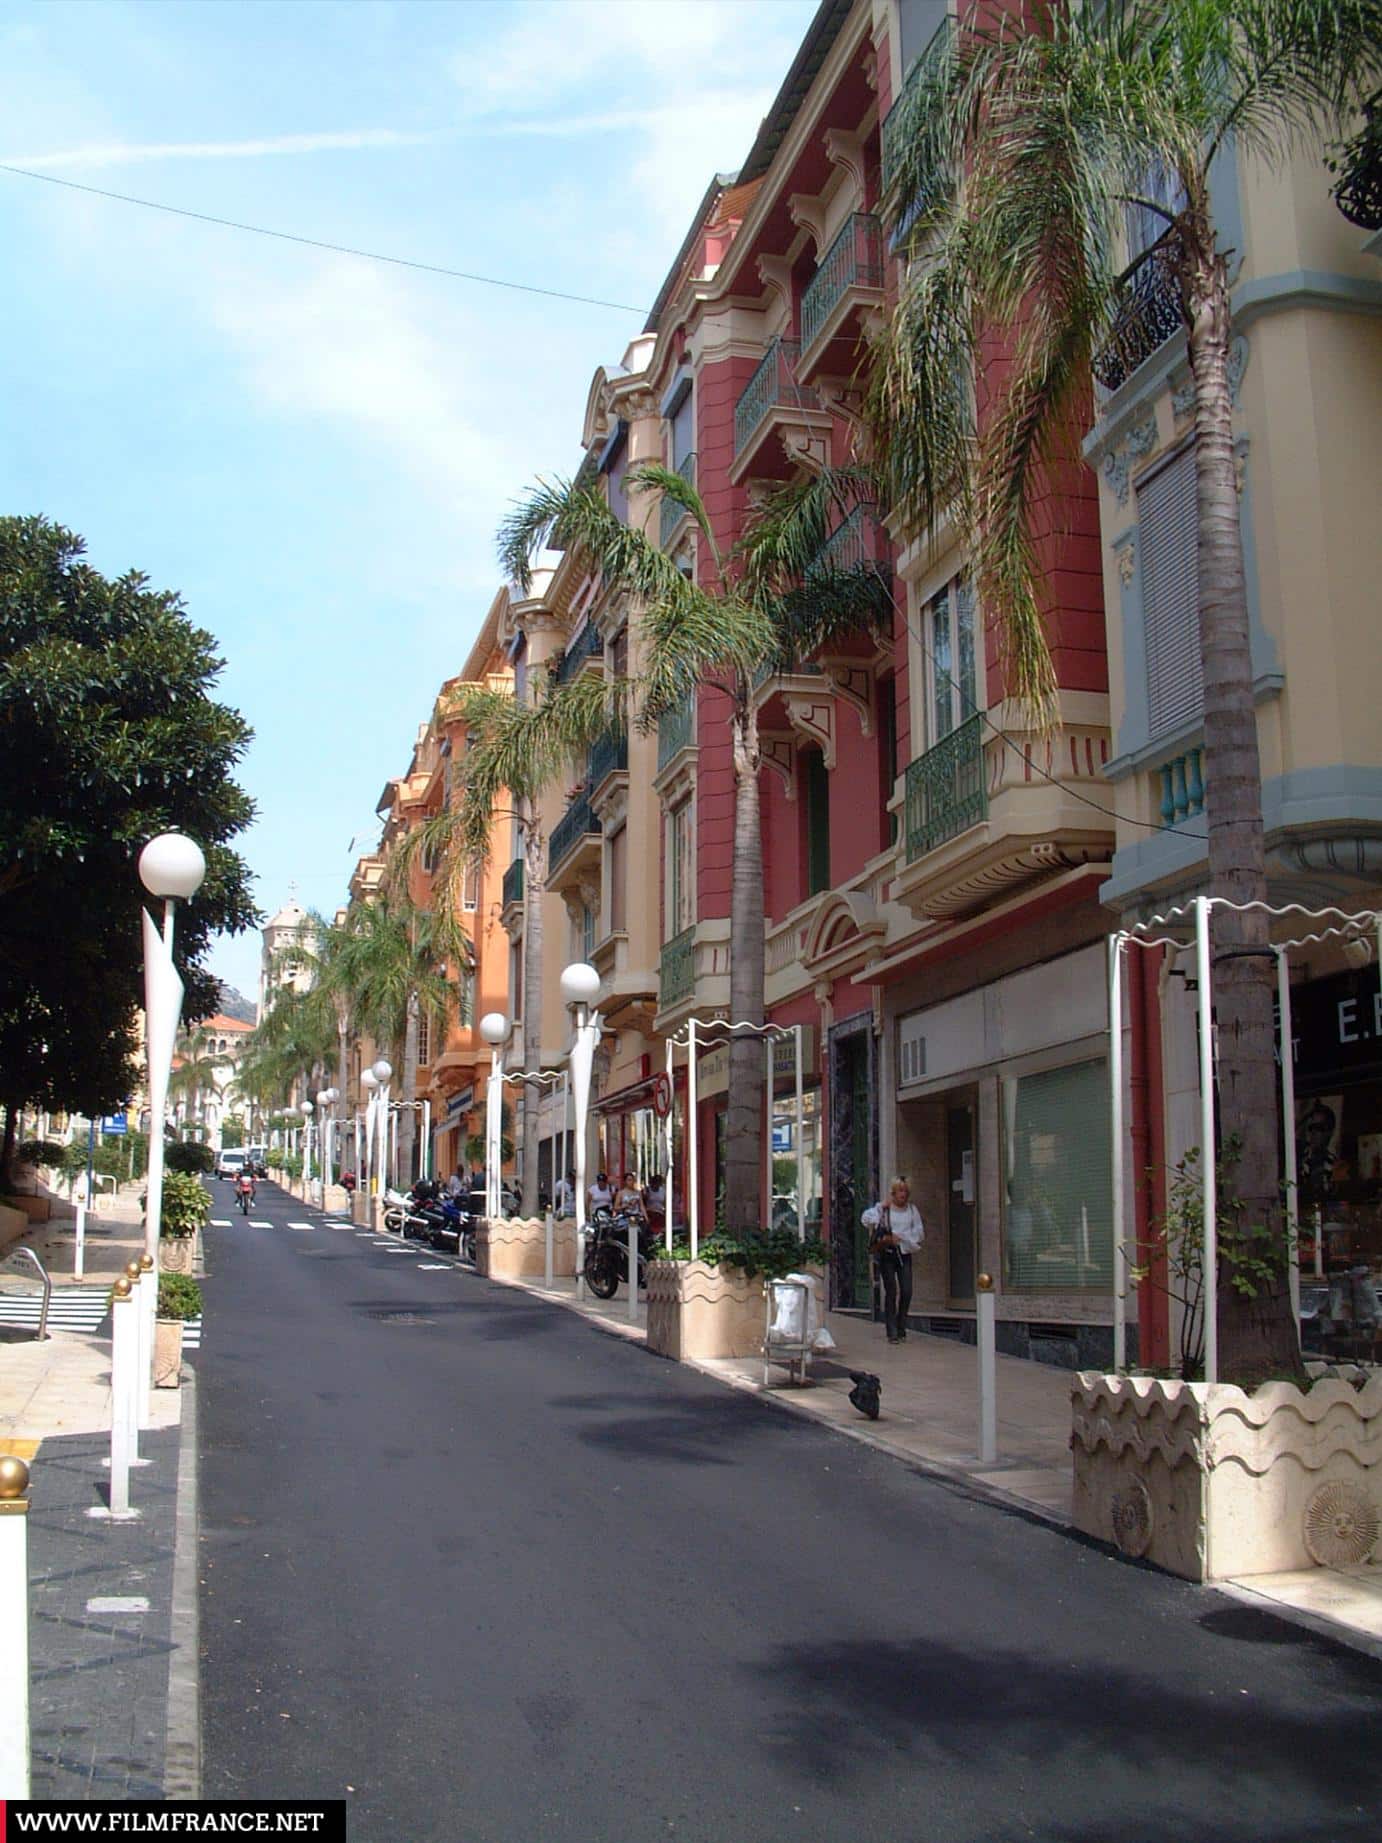 Investissement locatif Nice Cannes Antibes Beausoleil Investissement immobilier locatif investir rendement Nice Cannes Antibes